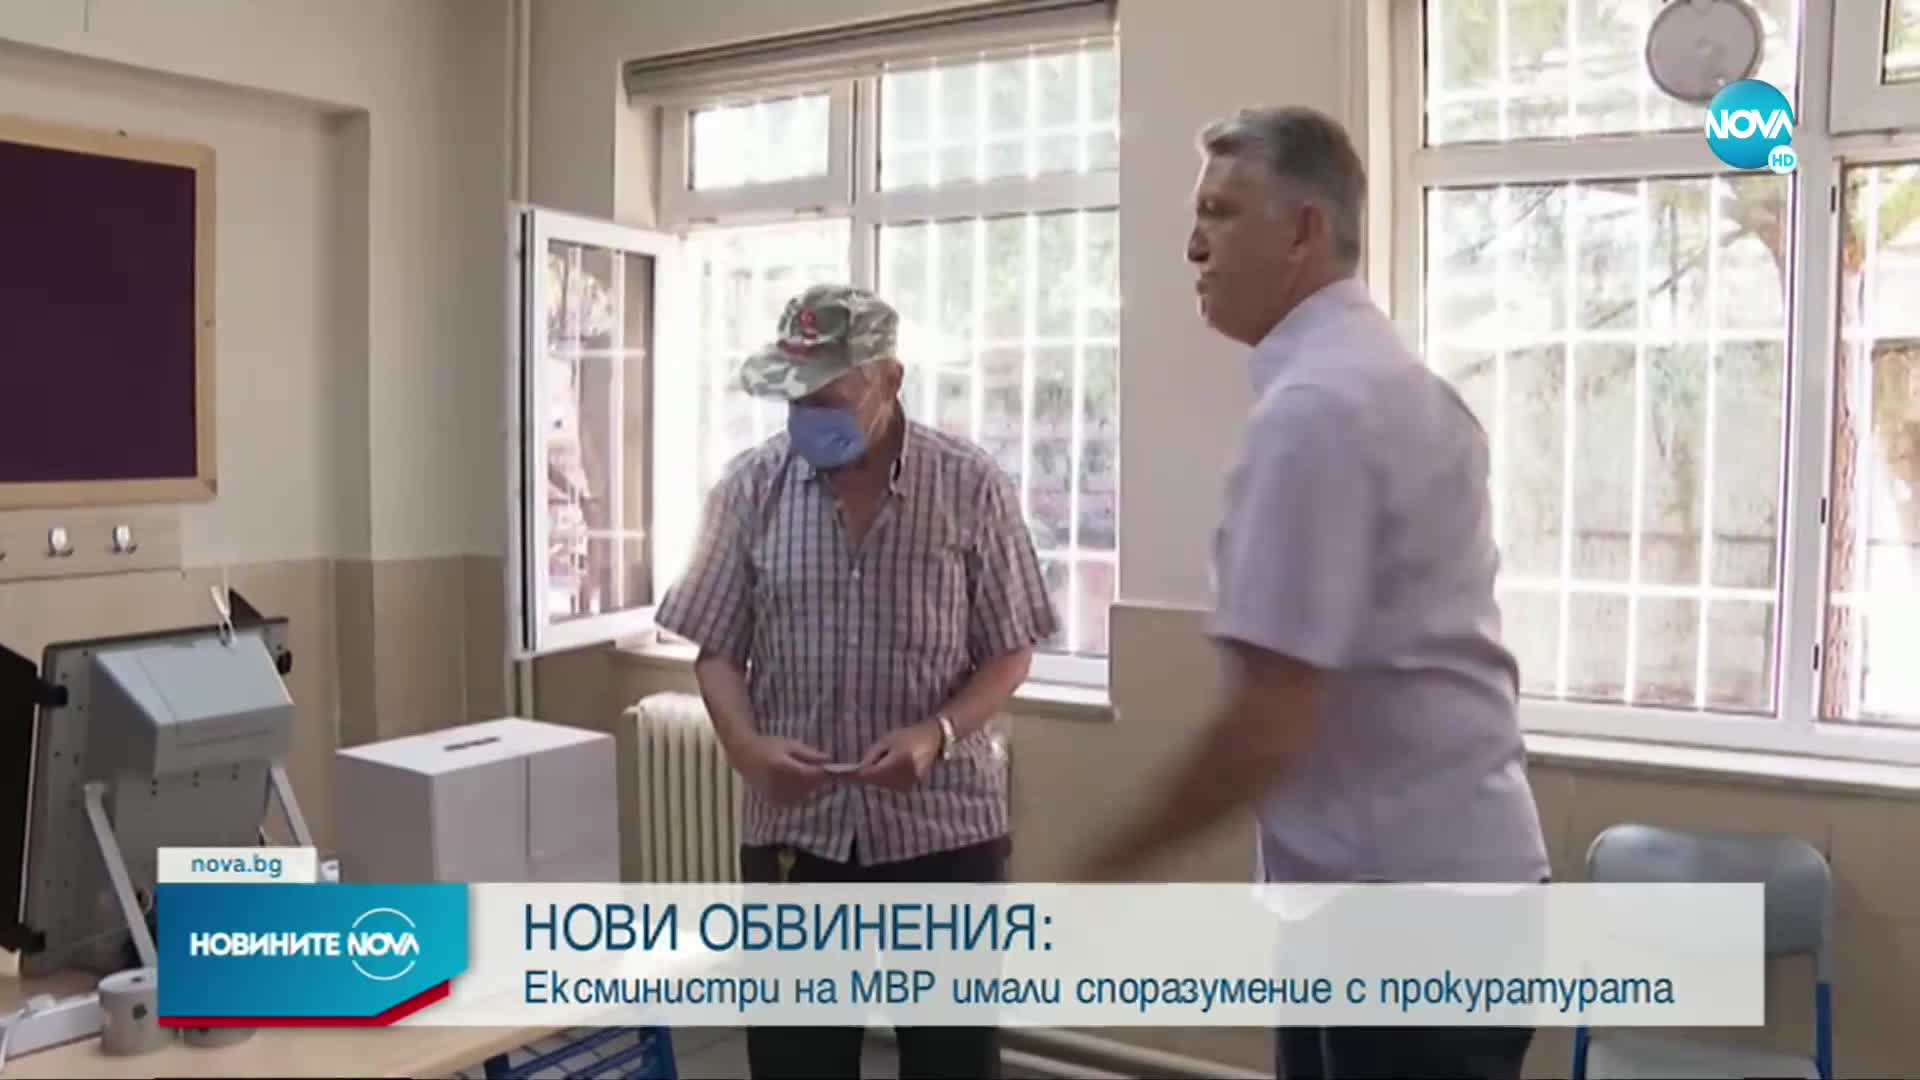 НОВИ ОБВИНЕНИЯ: Рашков твърди, че ексминистри на МВР имали споразумение с прокуратурата